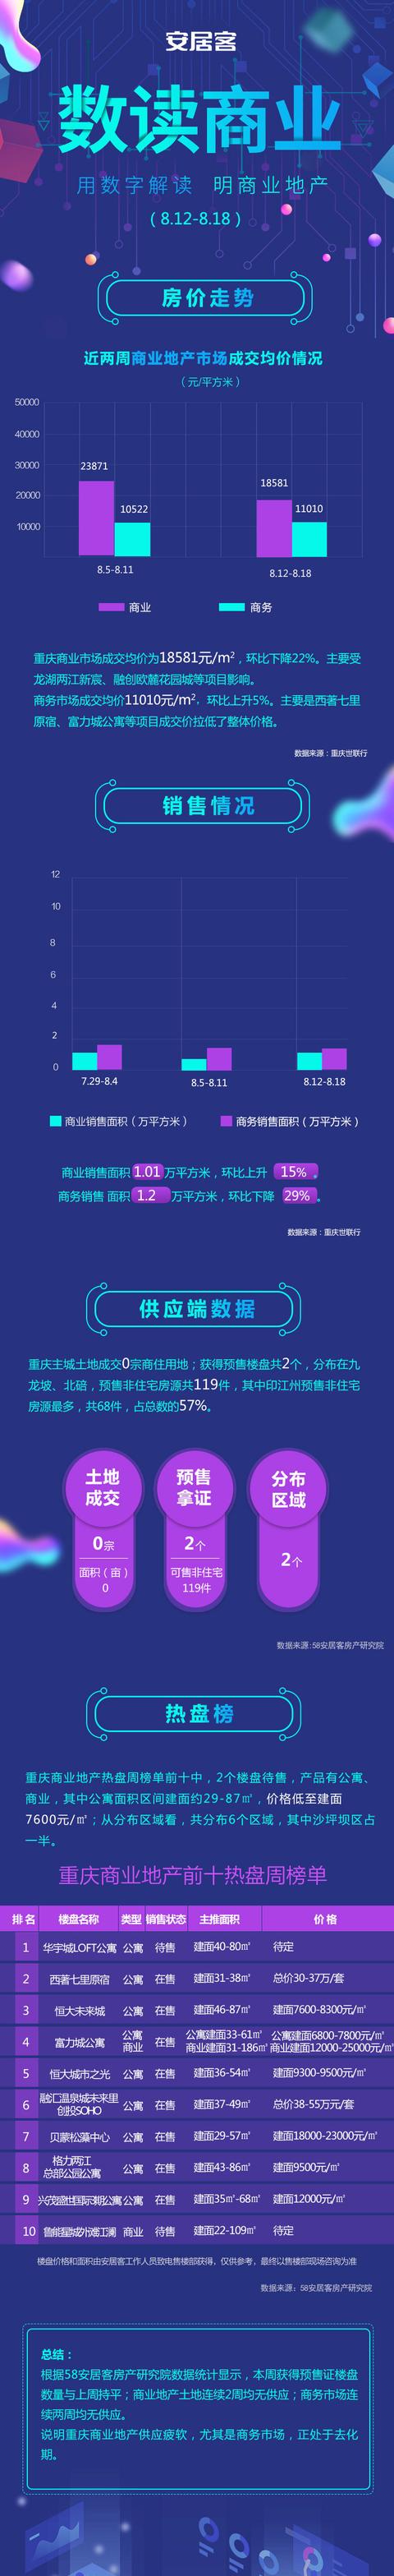 数读商业丨重庆沙坪坝公寓性价比高 低至7600元/㎡